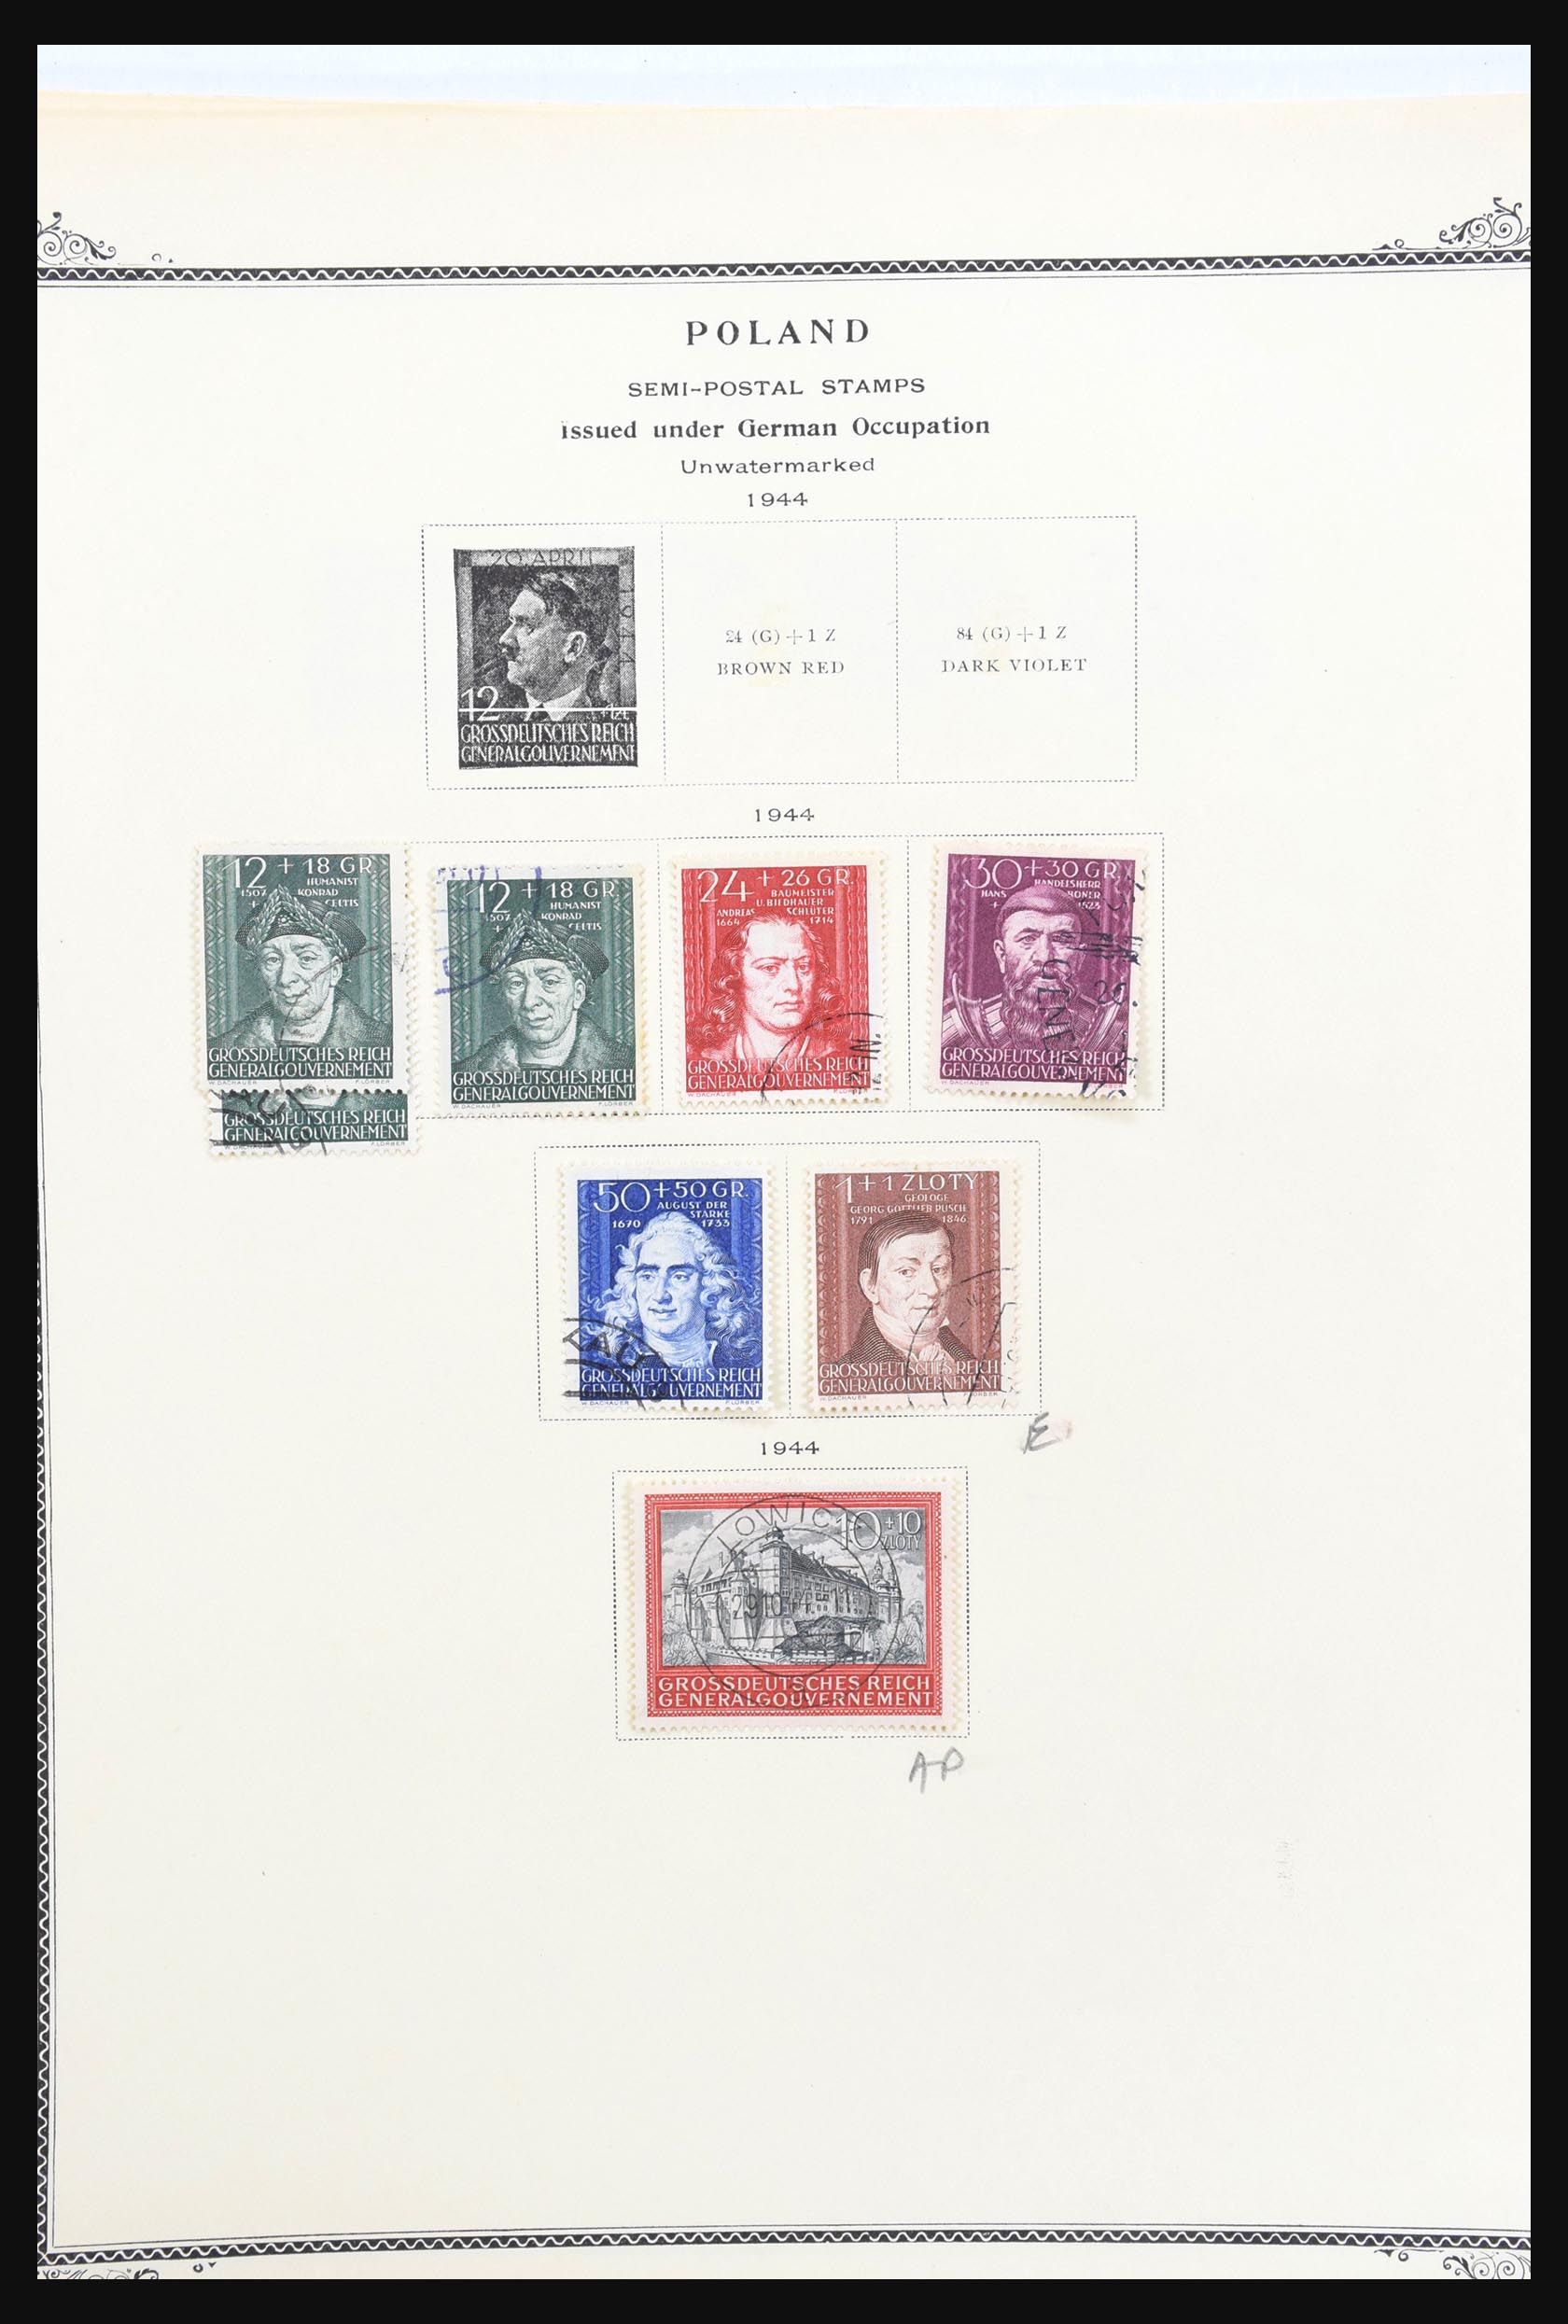 31300 146 - 31300 Duitsland superverzameling 1849-1990.